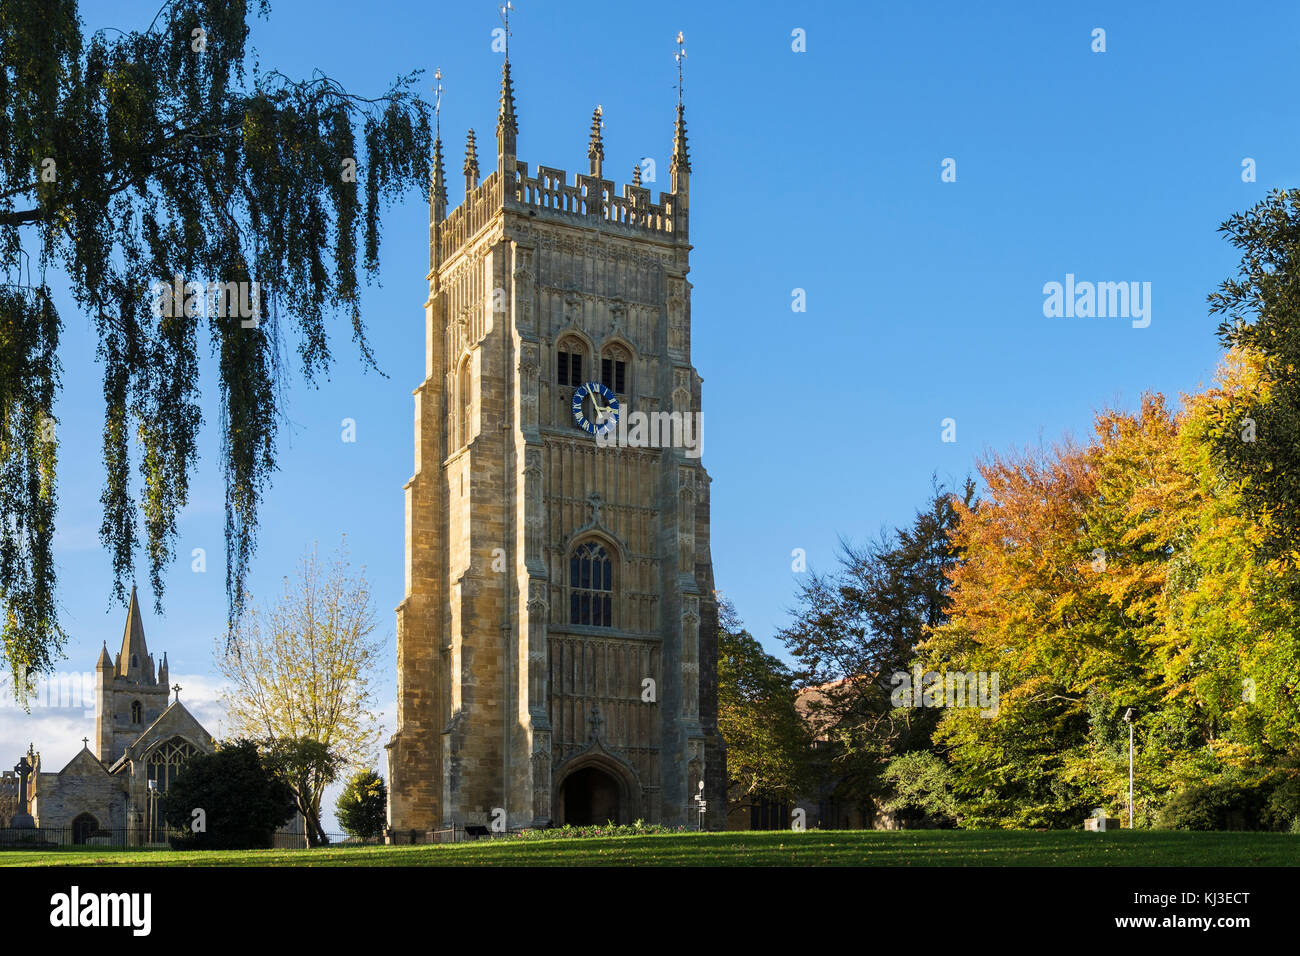 Die alte Abtei Glockenturm und die St. Laurentius Kirche in Abbey Park in Cotswolds Stadt. Evesham, Worcestershire, England, Großbritannien, Großbritannien Stockfoto